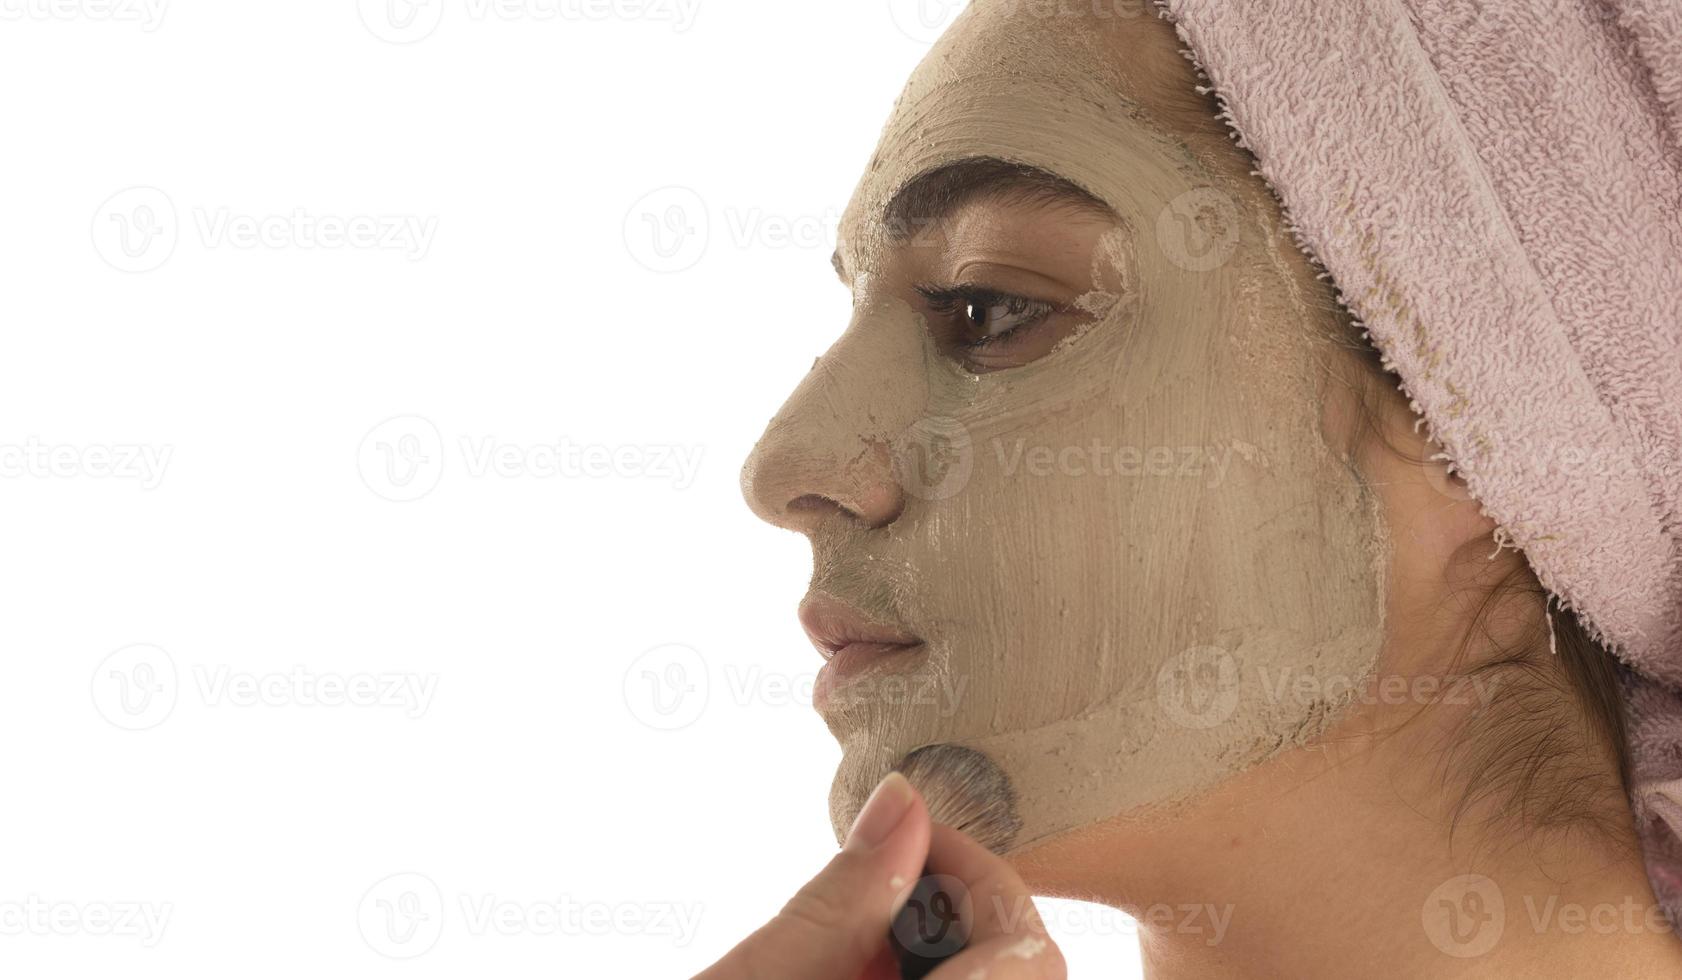 procedimientos de belleza concepto de cuidado de la piel. mujer joven aplicando máscara de arcilla de barro facial a su cara foto